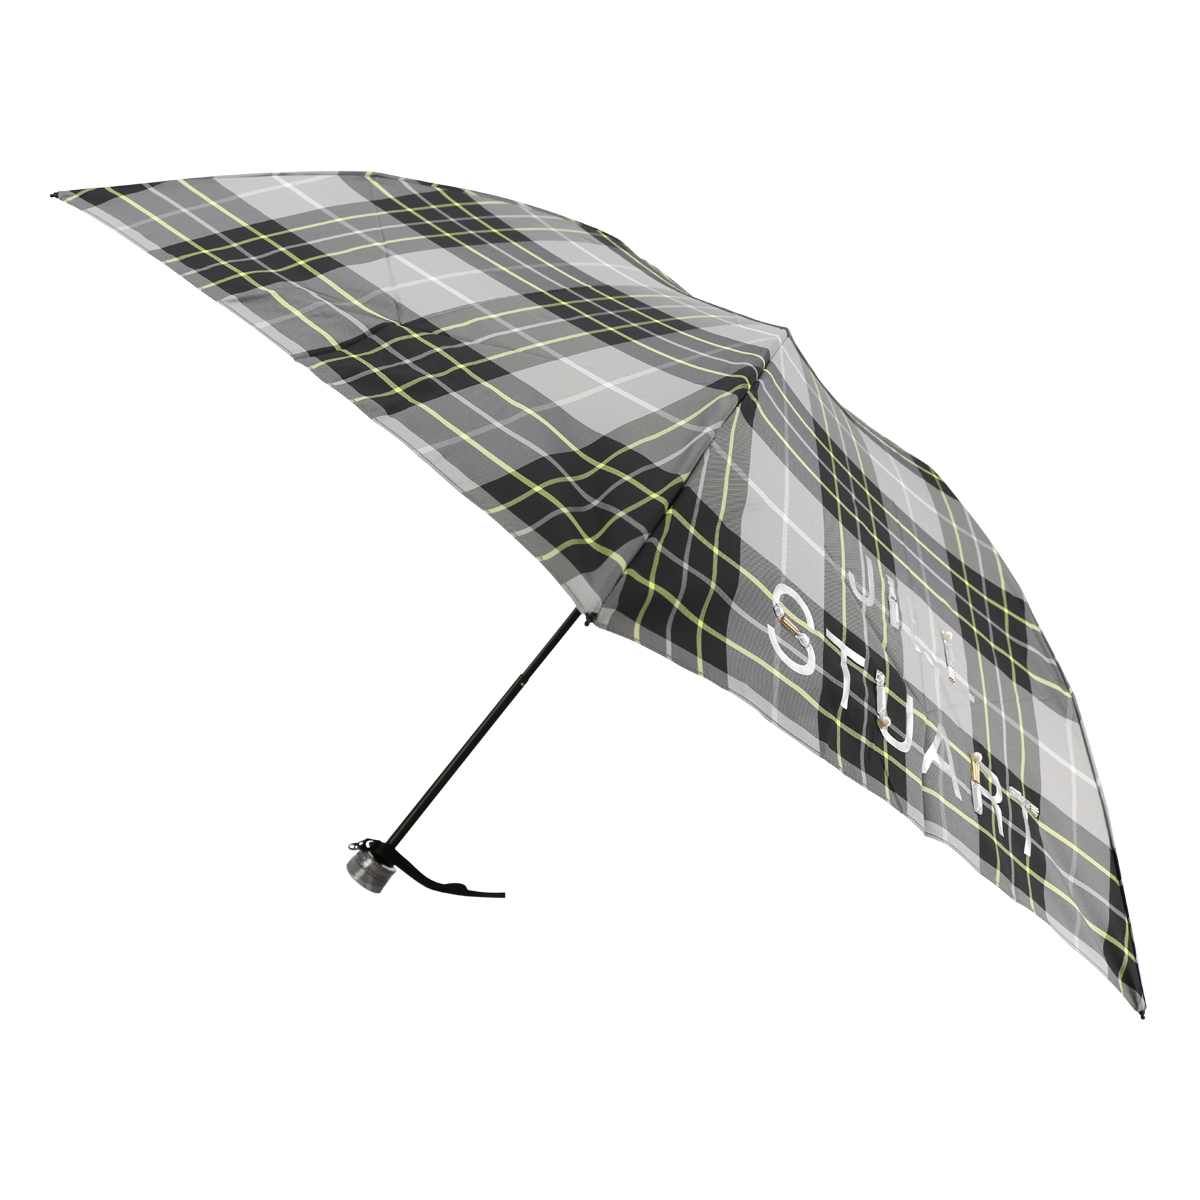 ジルスチュアート 折りたたみ傘 レディース 1JI 17735-35 JILLSTUART ギフト プレゼント 雨傘 軽量 ブランド チェック  90-99cm